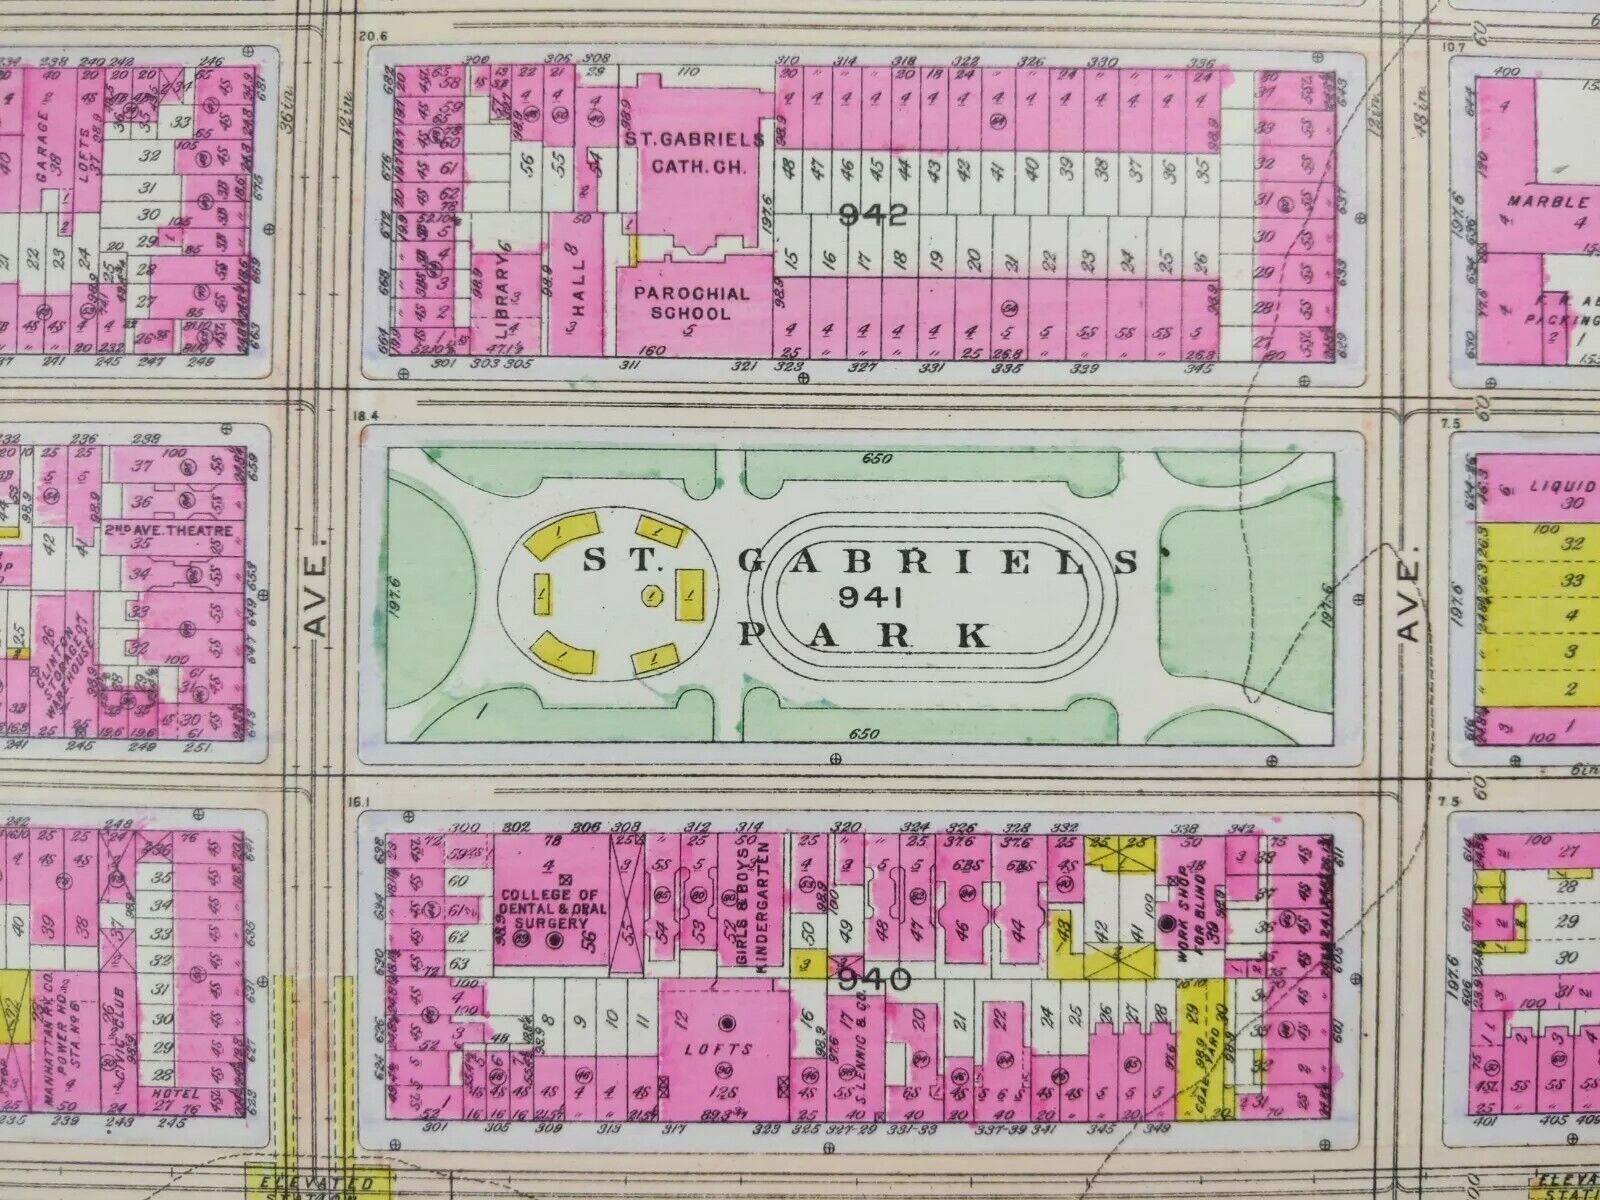 Antique 1916 ST GABRIELS PARK MANHATTAN NEW YORK CITY Map ST VARTAN PARK BROMLEY